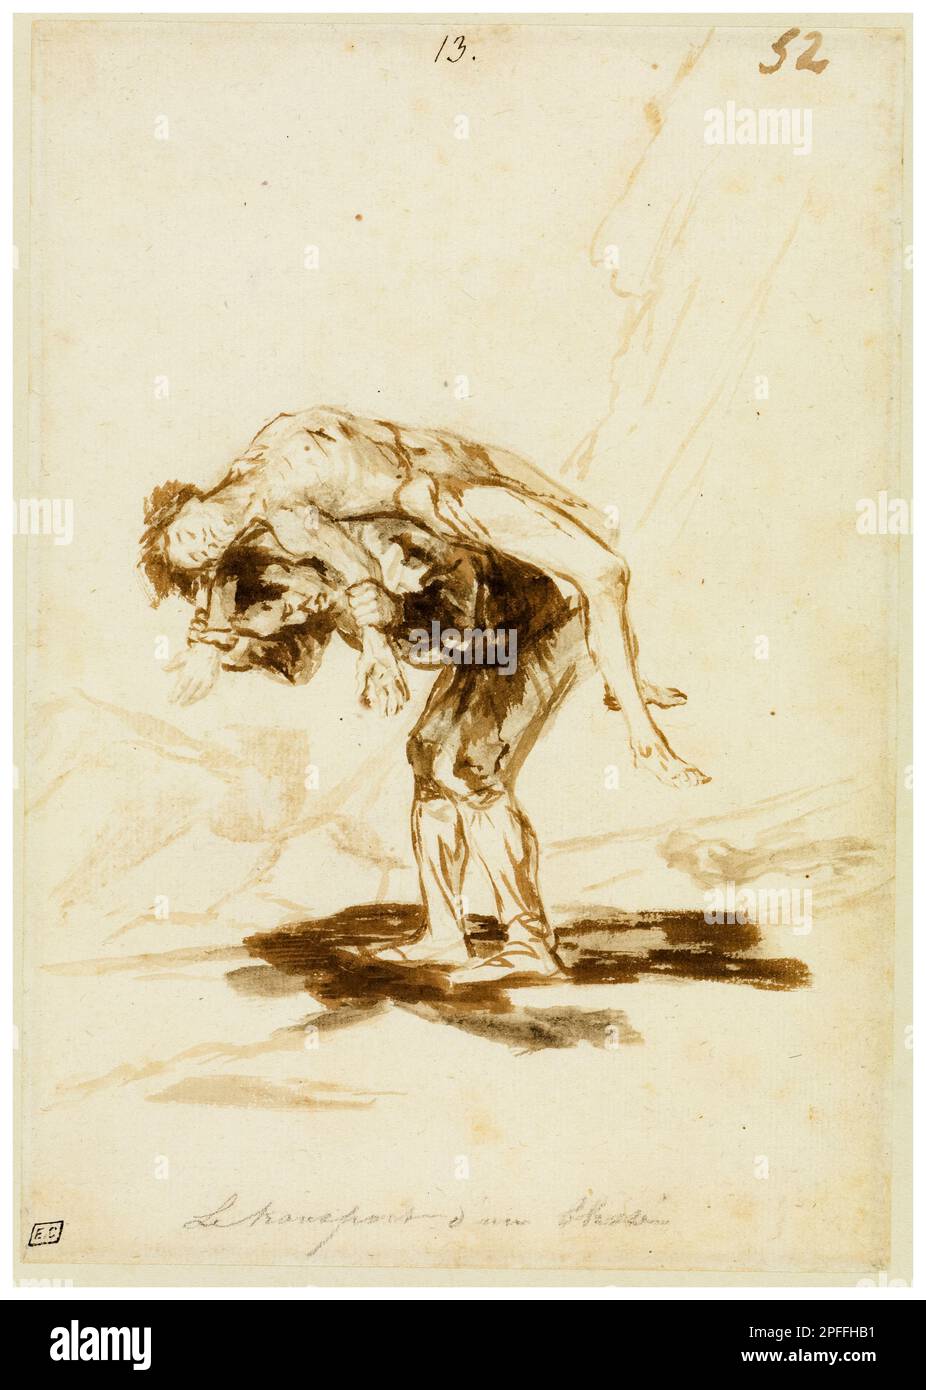 Francisco Goya, Ein Mann trägt einen toten Mann, malt in einem braunen Pinsel, 1815-1820 Stockfoto